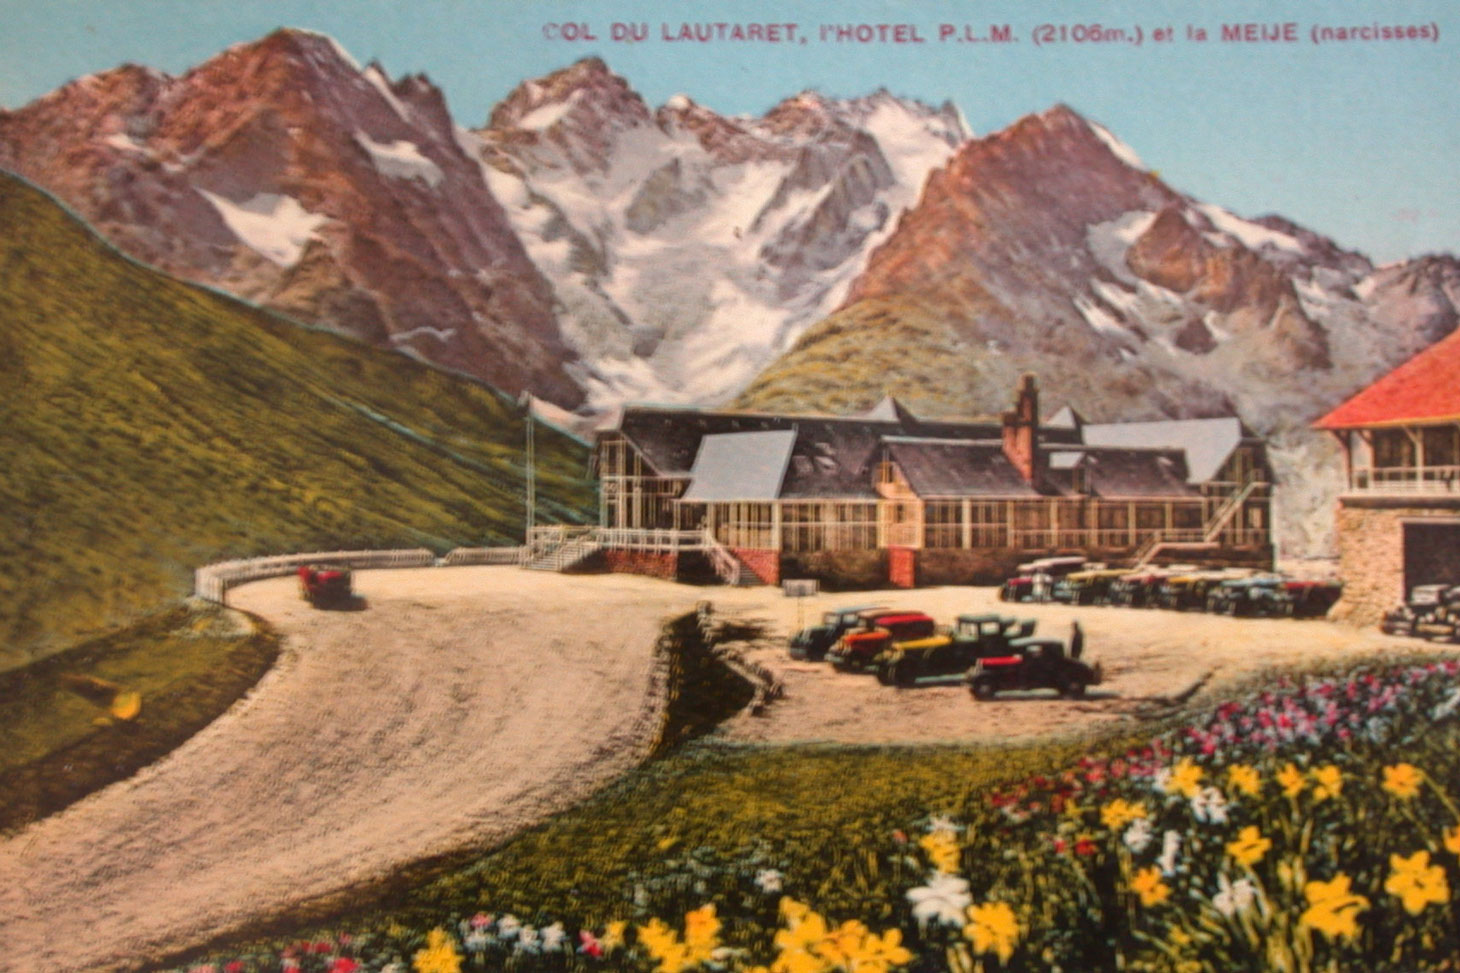 L'hôtel PLM avant l'incendie de 1944